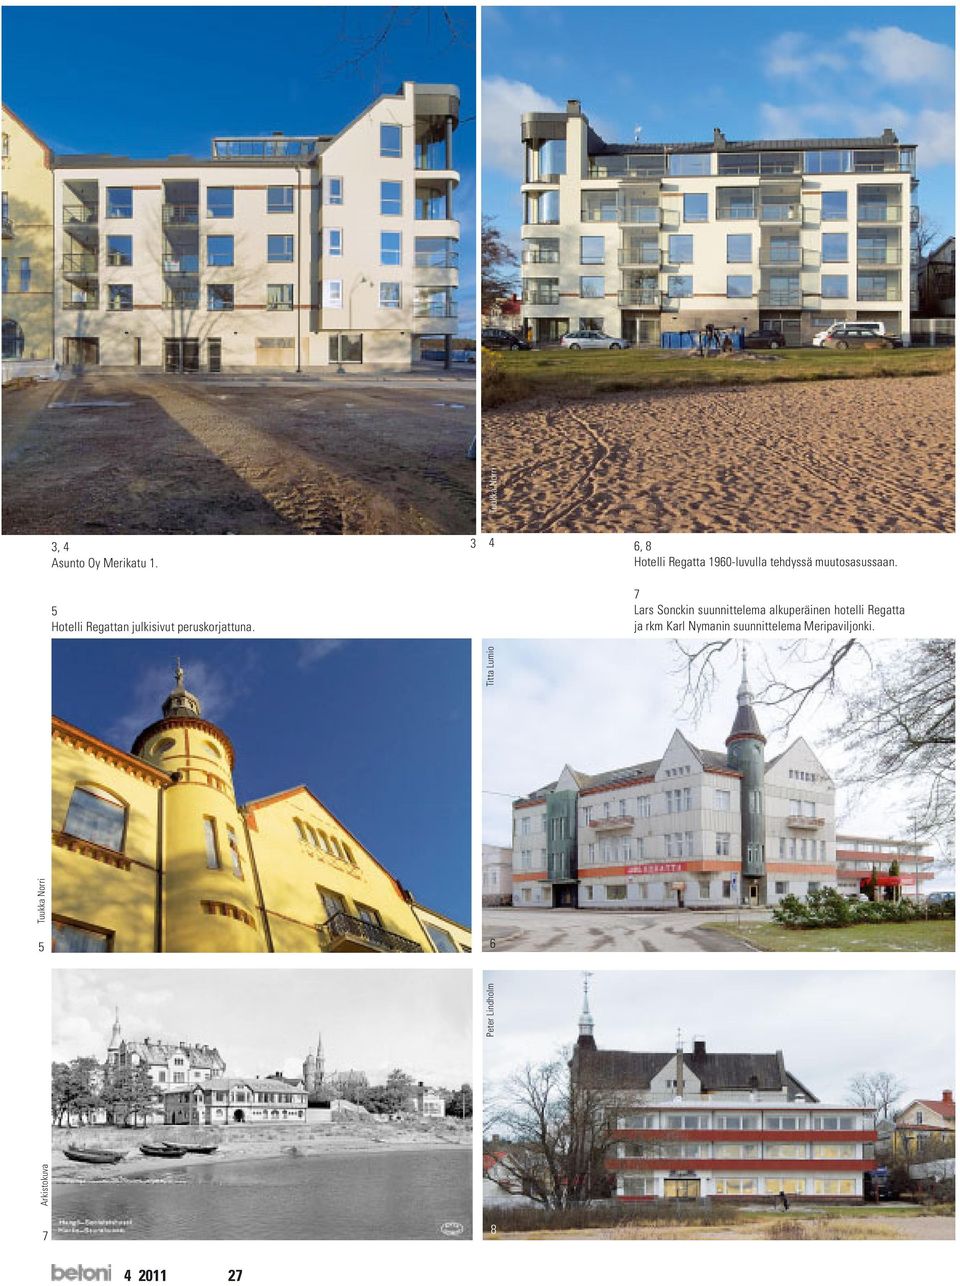 7 Lars Sonckin suunnittelema alkuperäinen hotelli Regatta ja rkm Karl